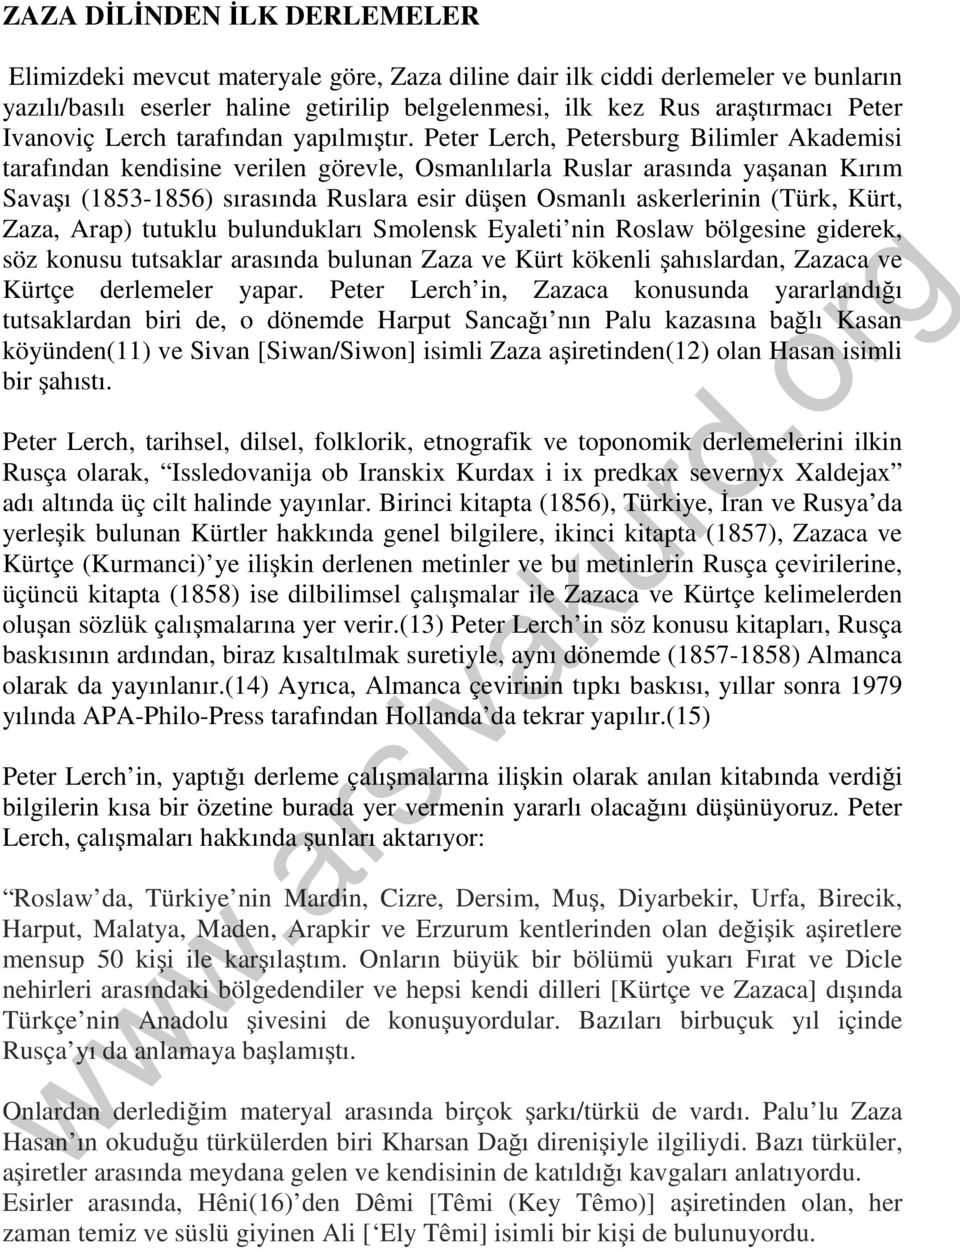 Peter Lerch, Petersburg Bilimler Akademisi tarafından kendisine verilen görevle, Osmanlılarla Ruslar arasında yaşanan Kırım Savaşı (1853-1856) sırasında Ruslara esir düşen Osmanlı askerlerinin (Türk,